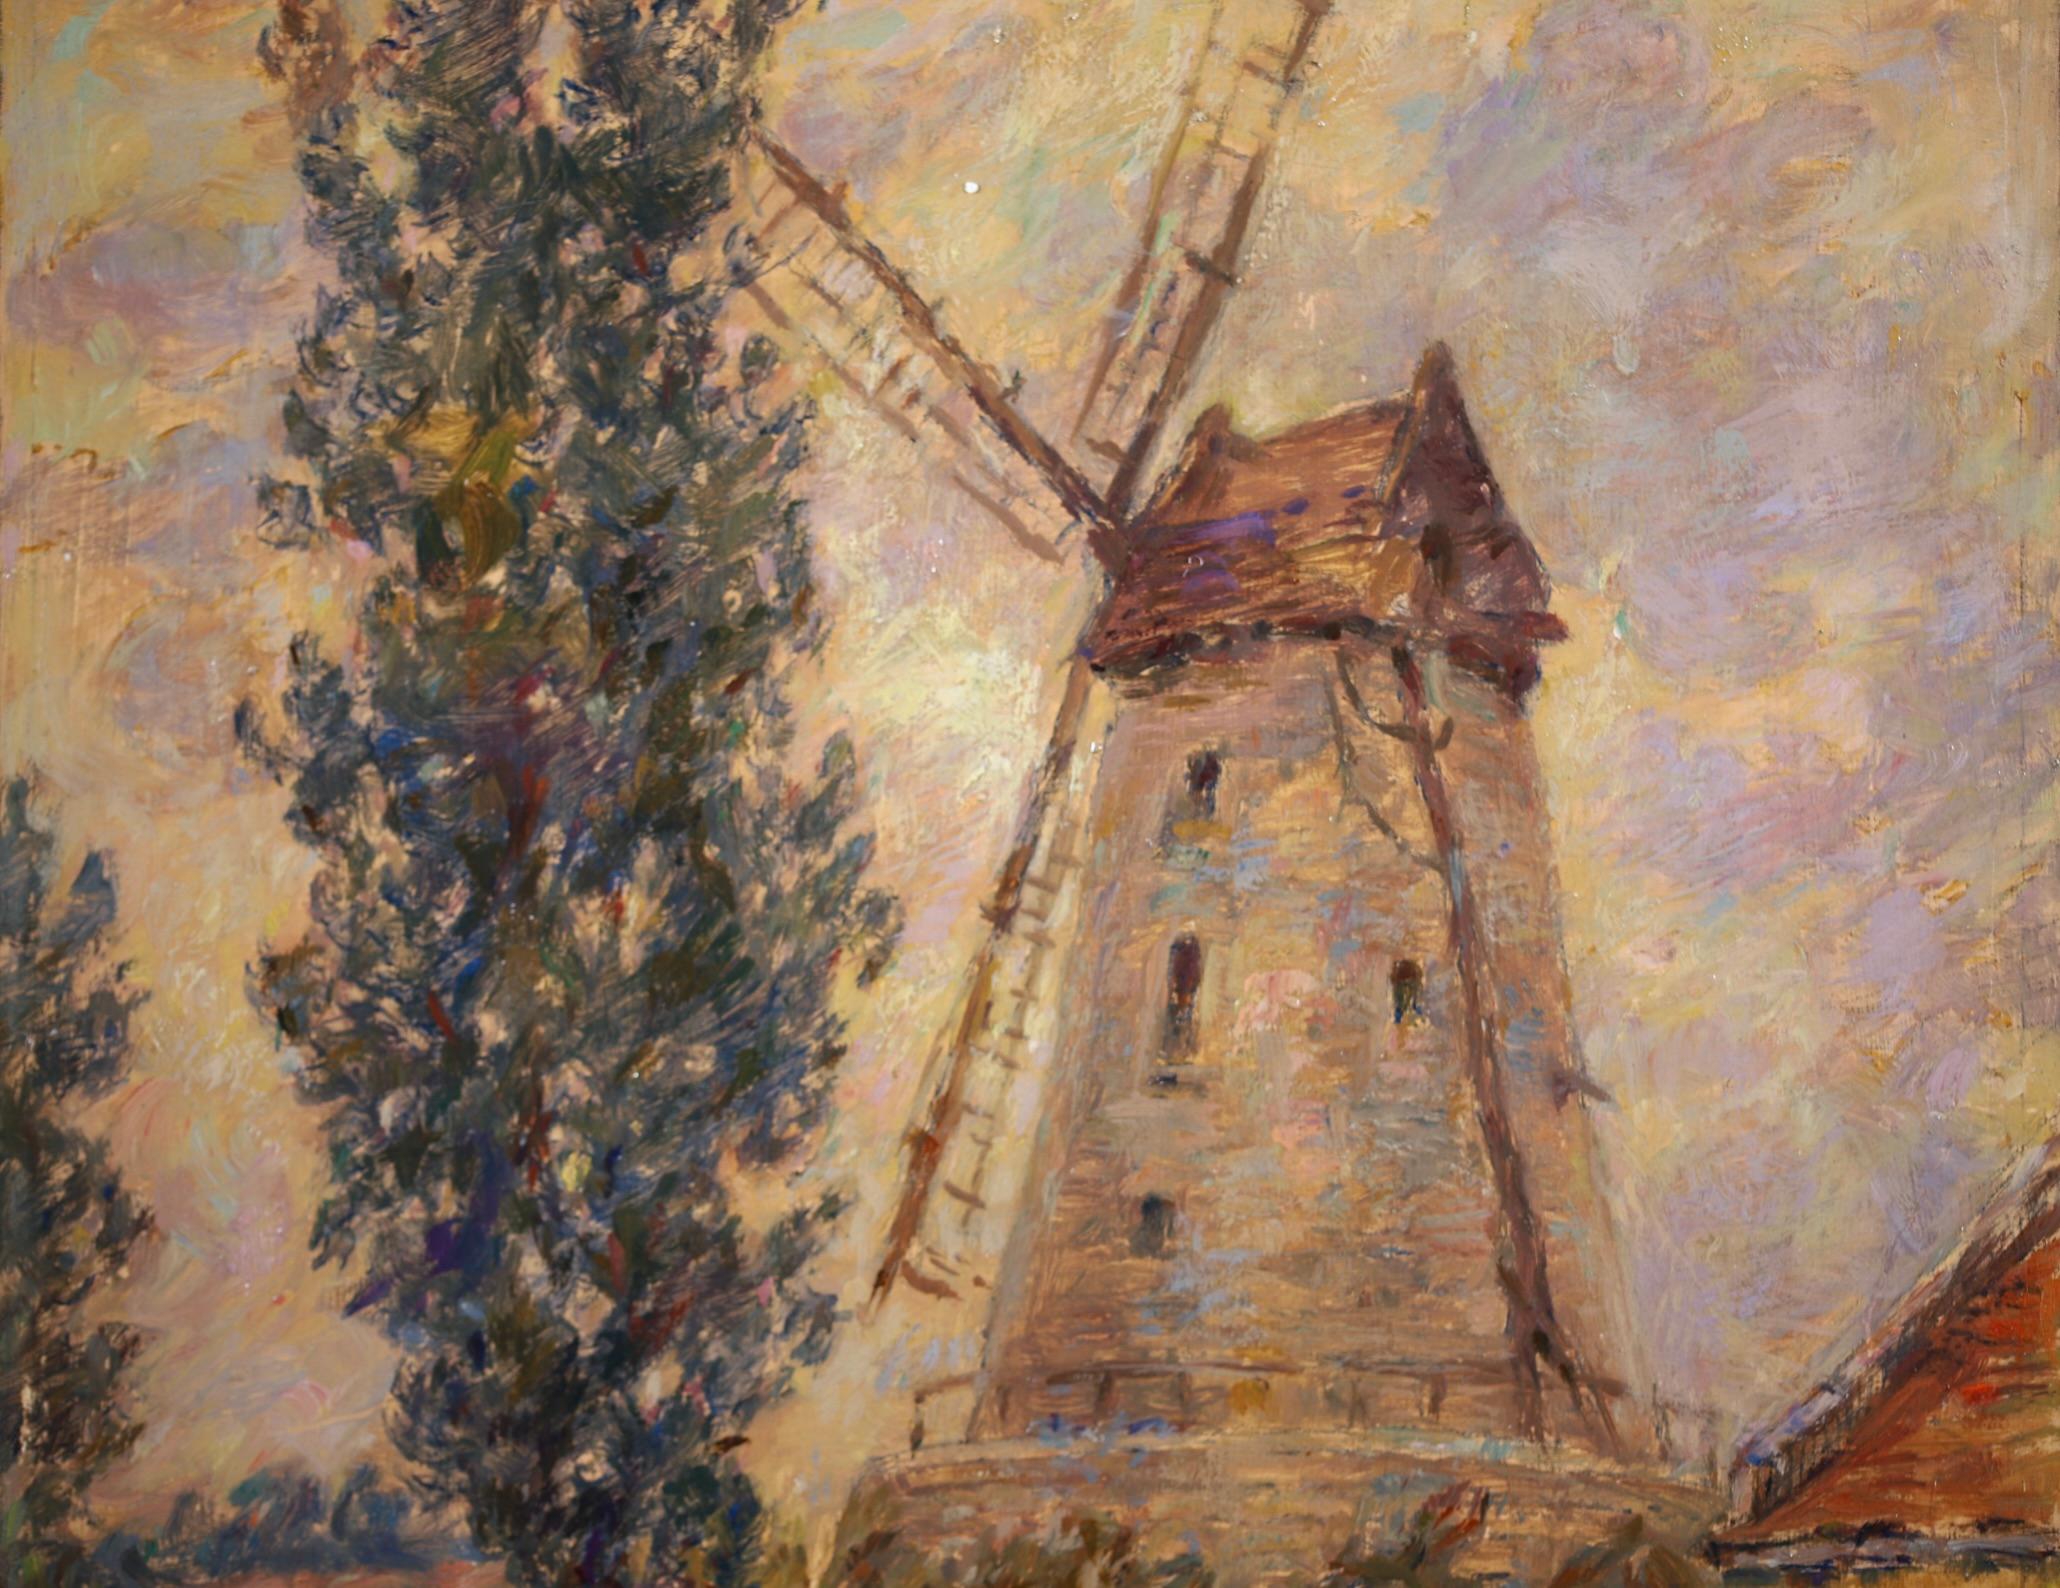 Moulin - Impressionist Oil, Windmill, Figures & Dog in Landscape by Henri Duhem 5